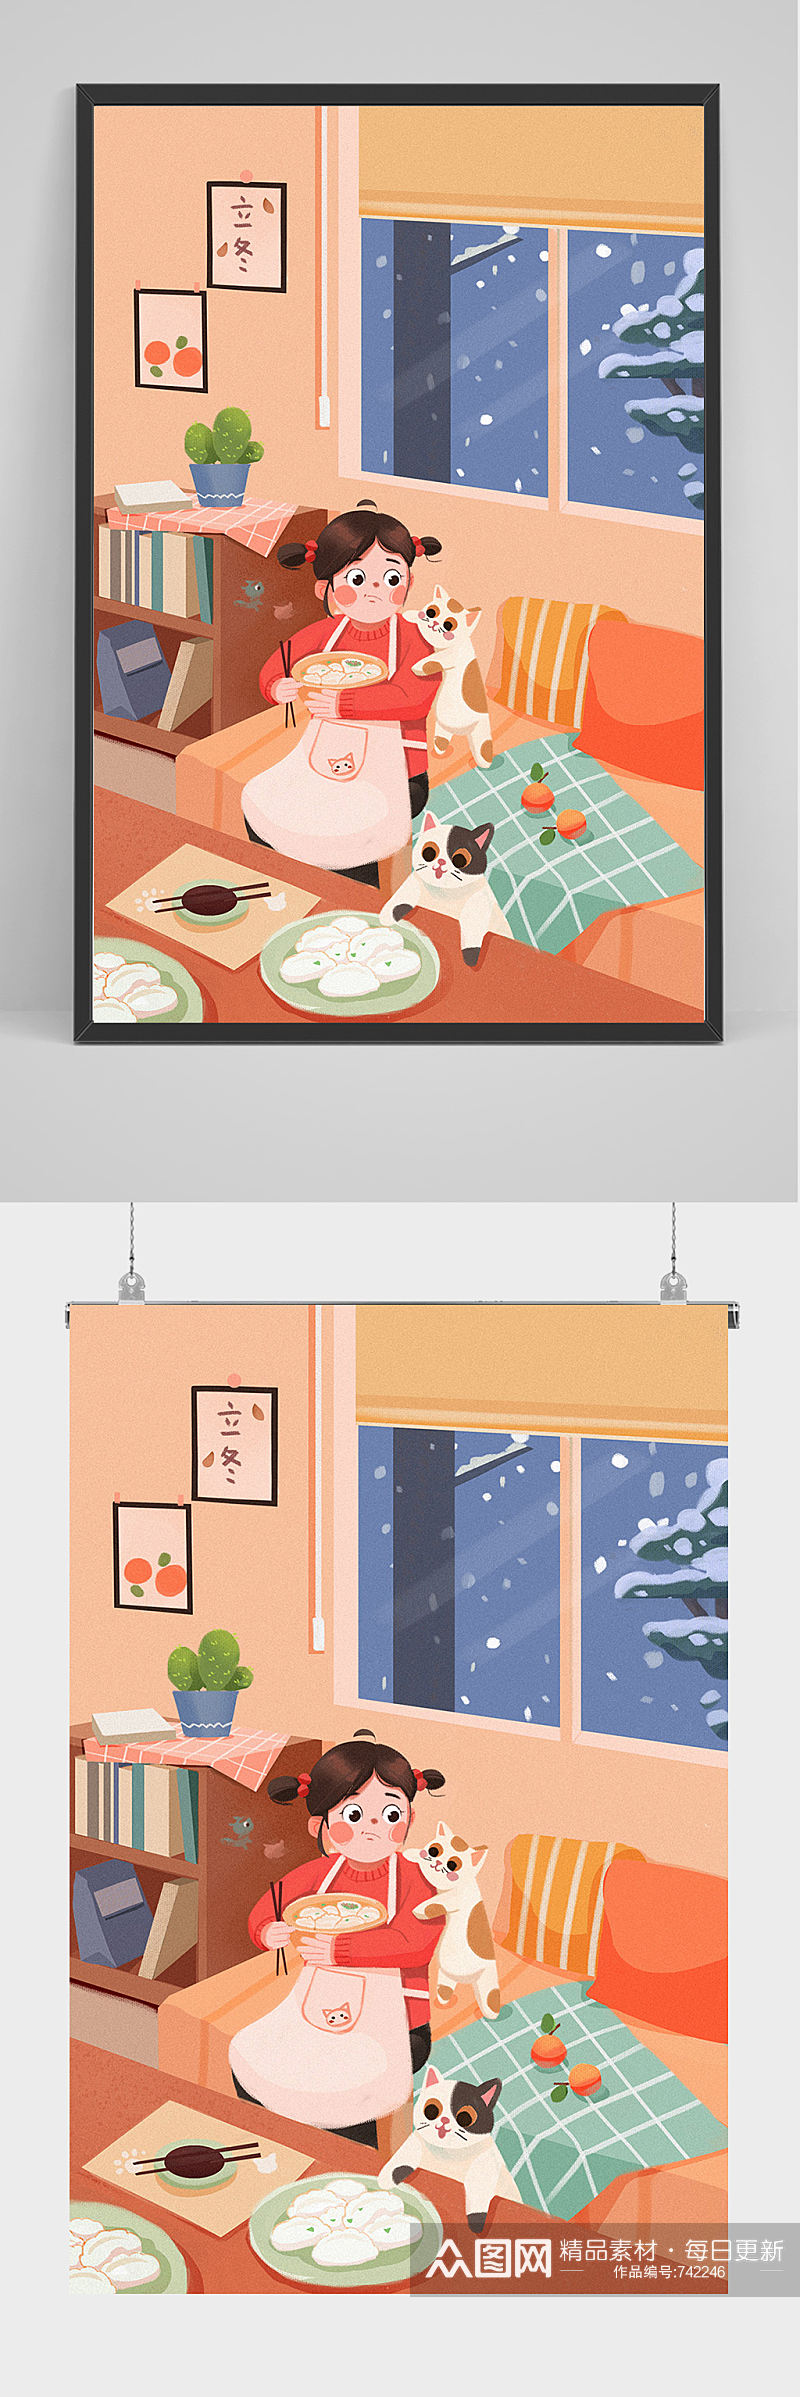 精品手绘女孩和小猫吃饺子插画设计素材